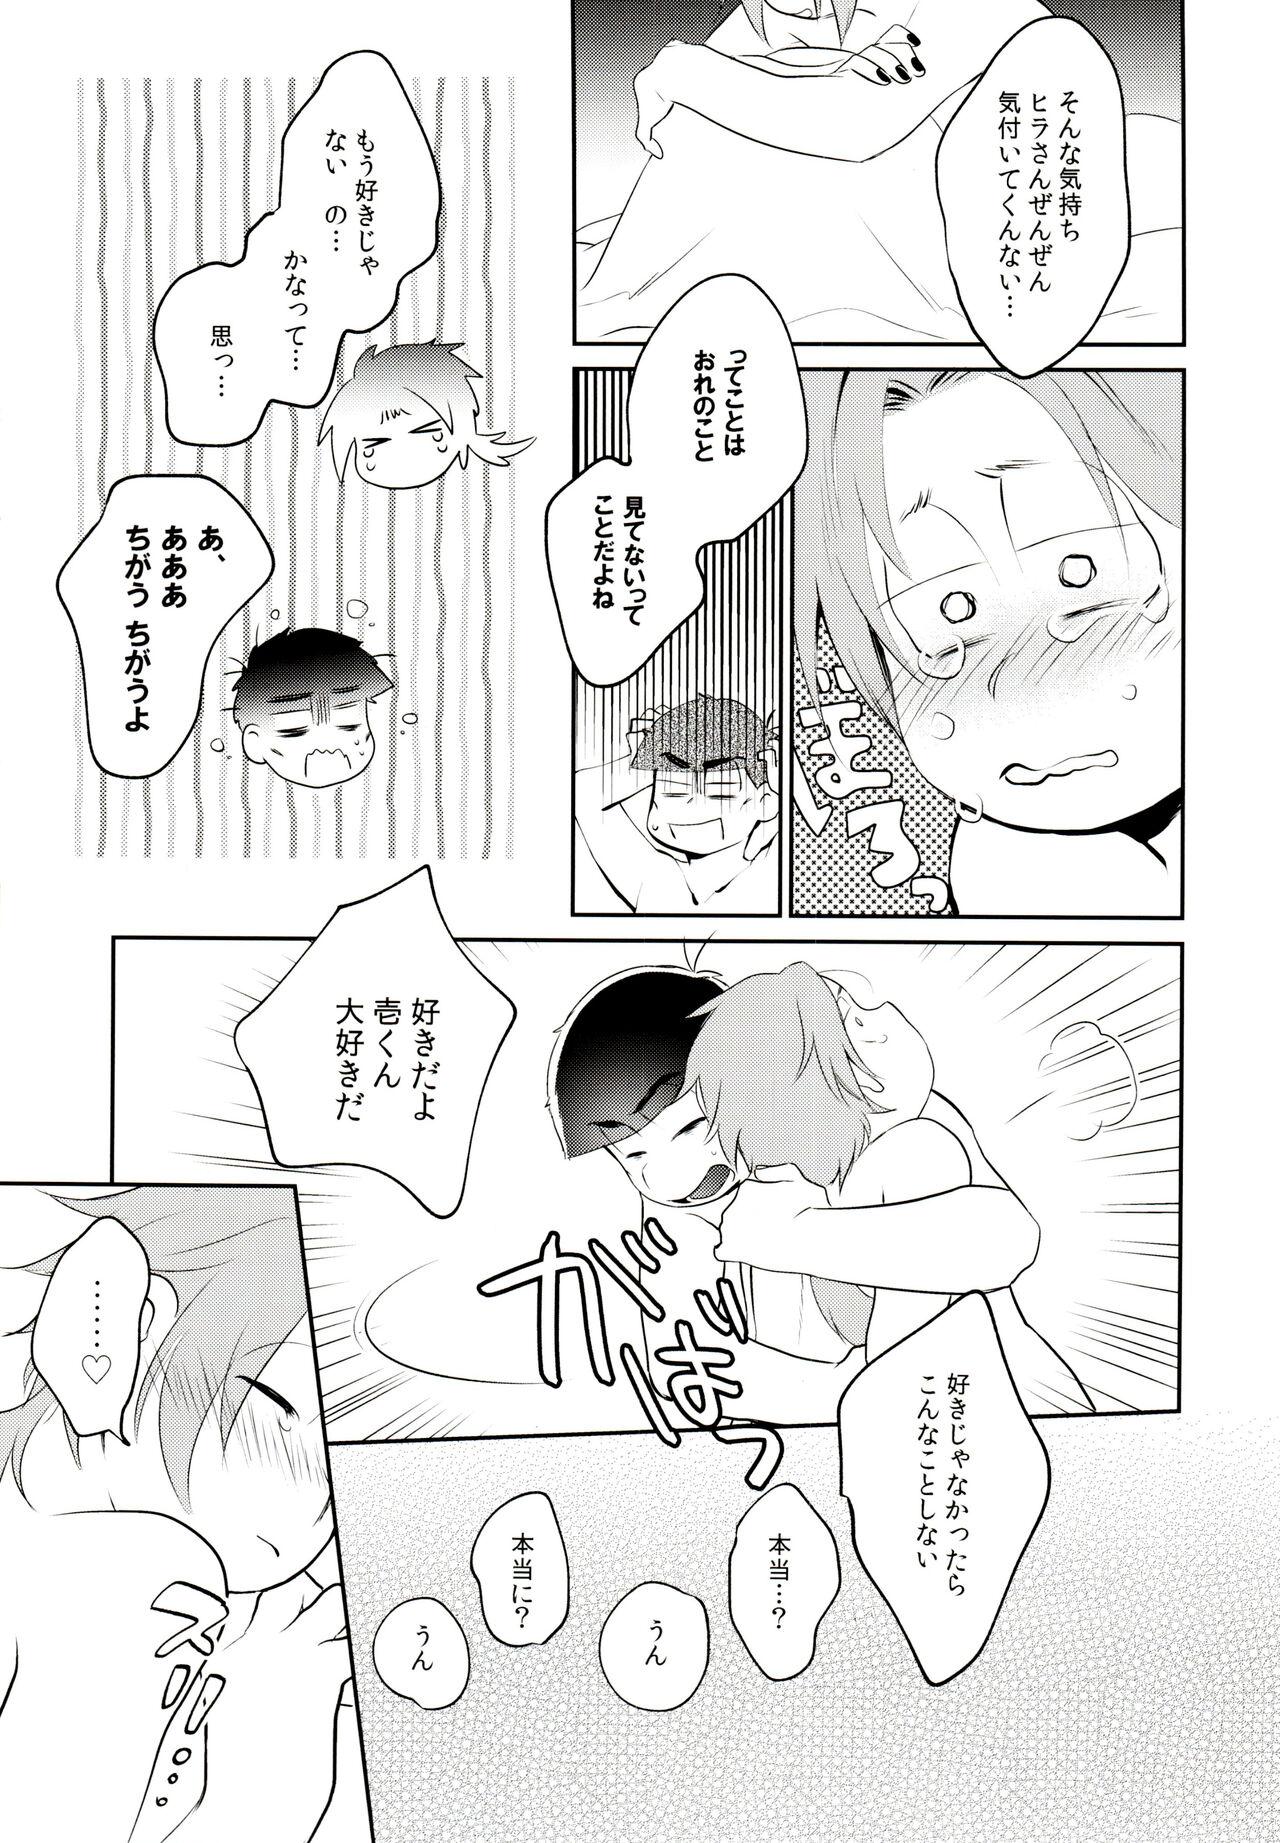 Rubbing Harrei n ba de deatte dekita toshishita no koibito ga Are isonshō kamo shirenai. - Osomatsu-san Amature Sex Tapes - Page 12